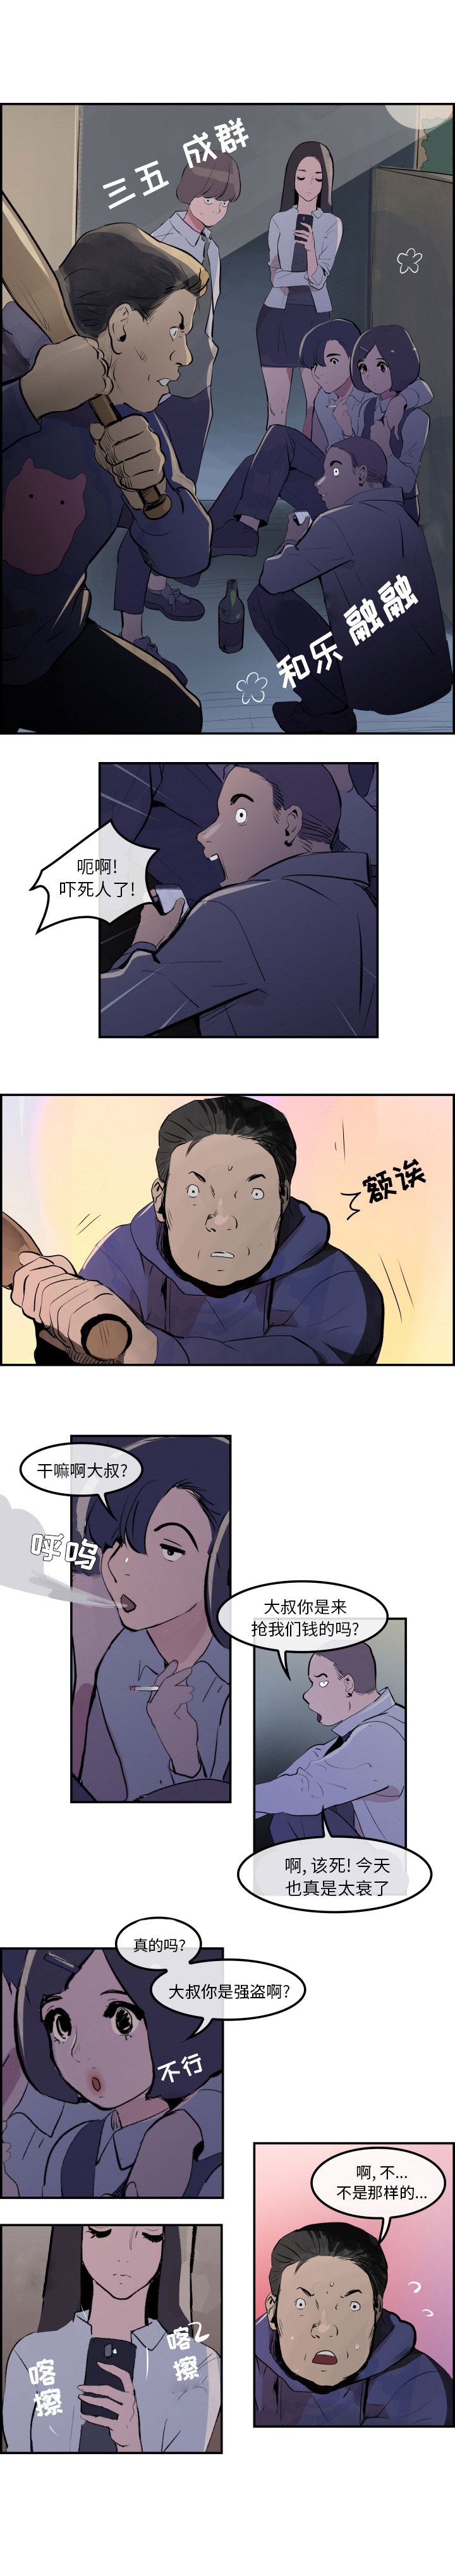 韩国污漫画 任何小姐 30 15